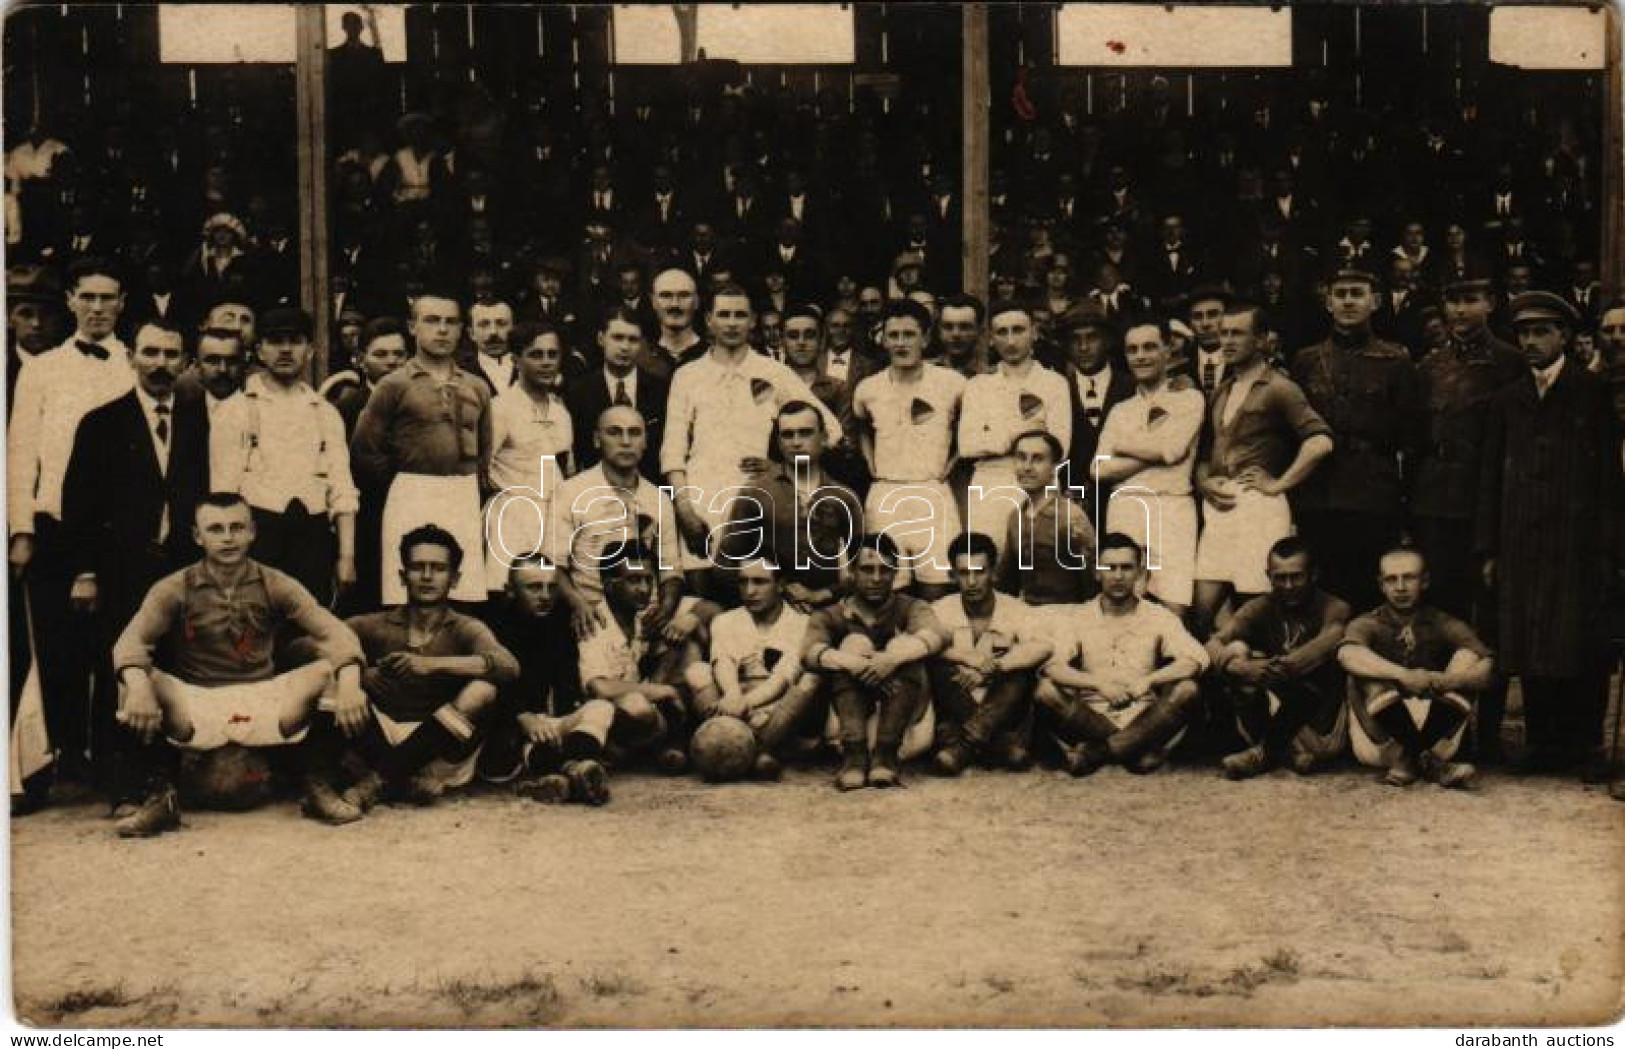 * T2/T3 1921 Békéscsaba Előre Labdarúgócsapat, Focisták, Futball / Hungarian Football Team. Róna és Fehér Photo (fl) - Non Classés